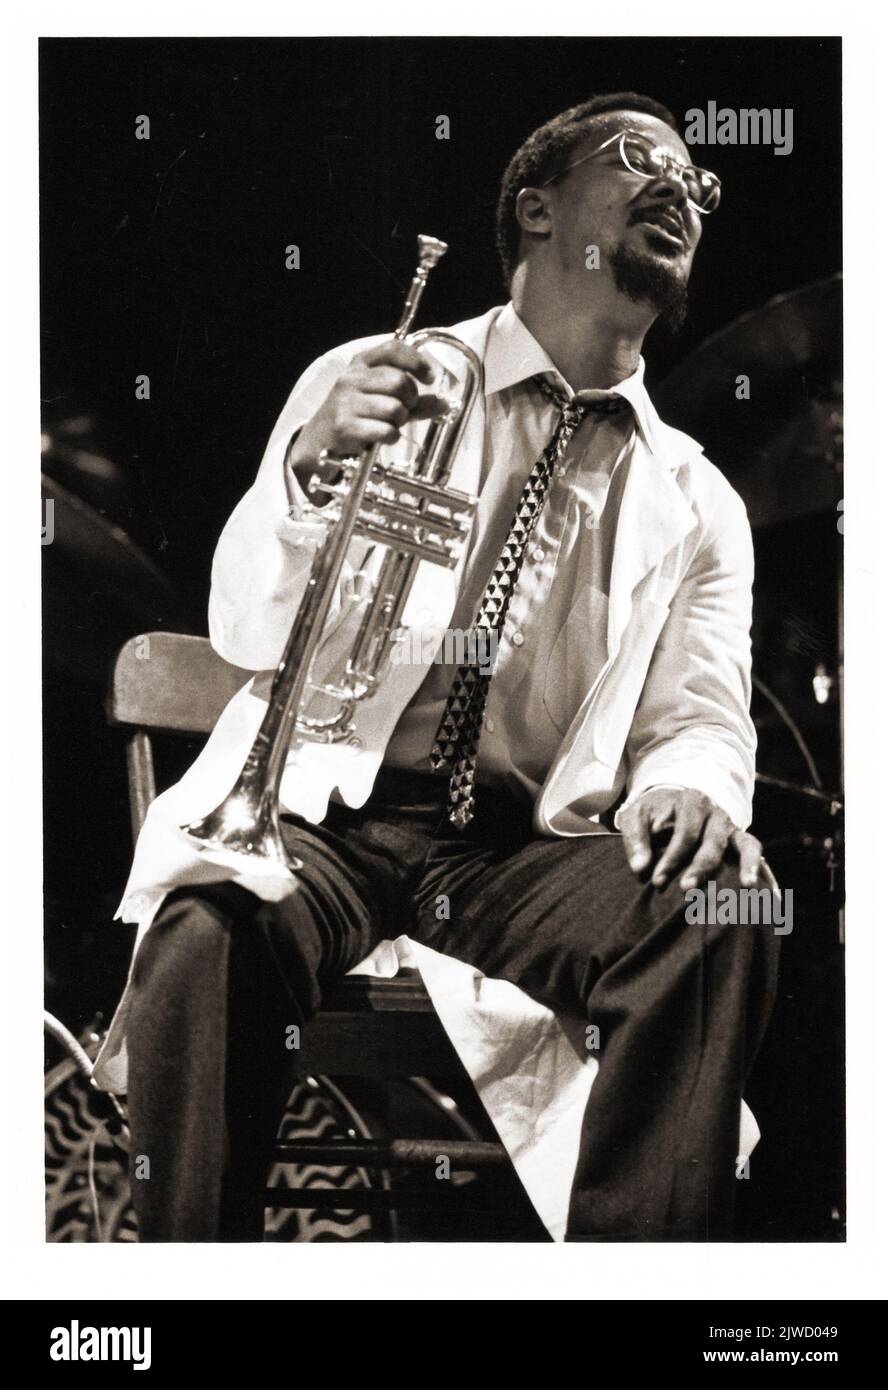 Lester Bowie, trompettiste de jazz, sur scène lors d'un concert d'Art ensemble de Chicao à New York, vers 1983. Banque D'Images